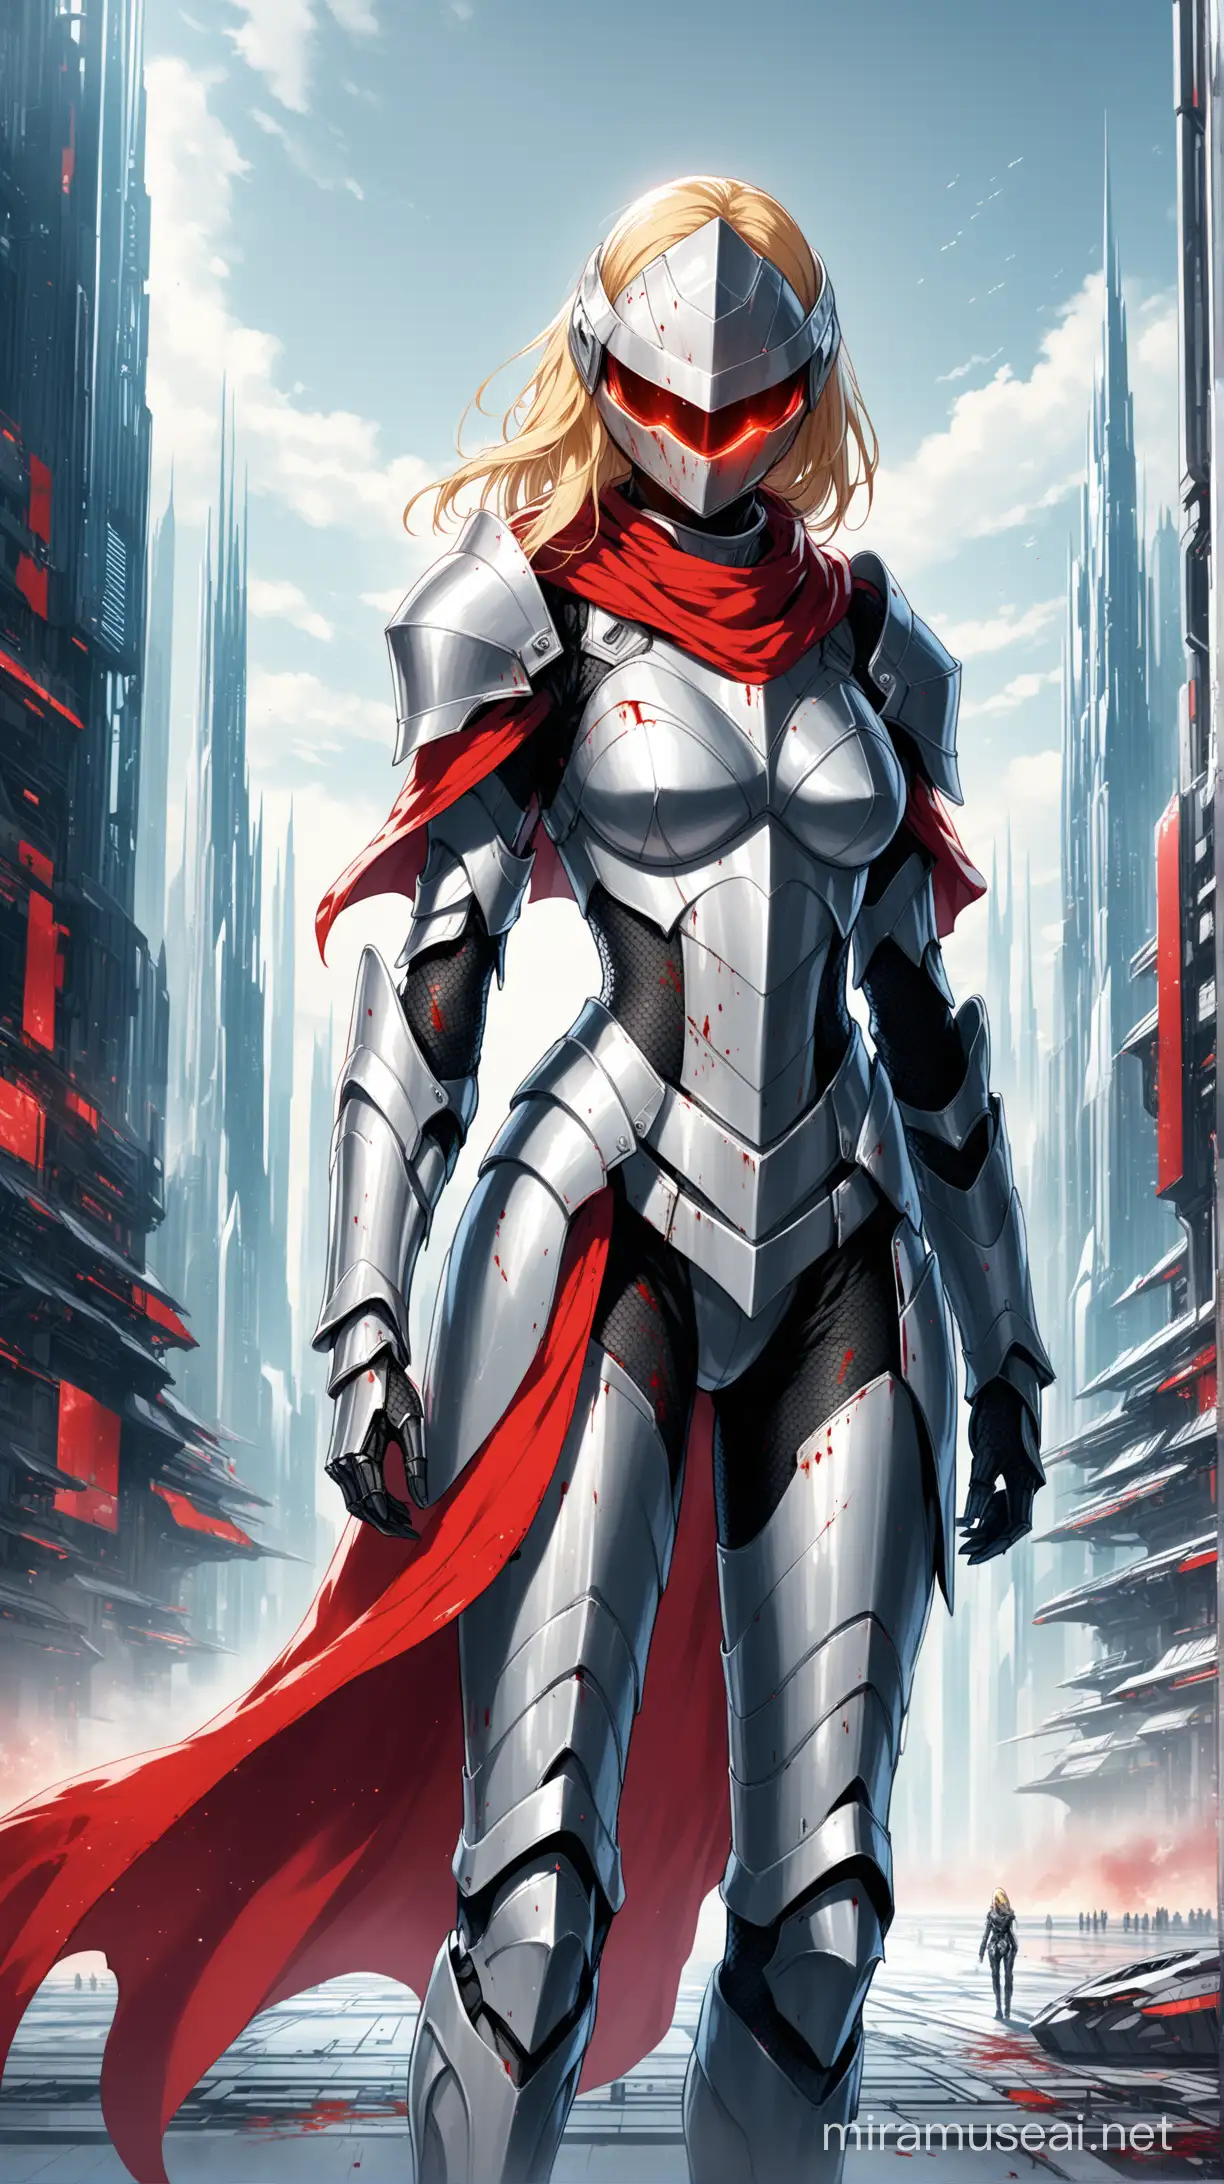 Blonde Futuristic Knight Woman in Silver Armor Amidst a Futuristic City